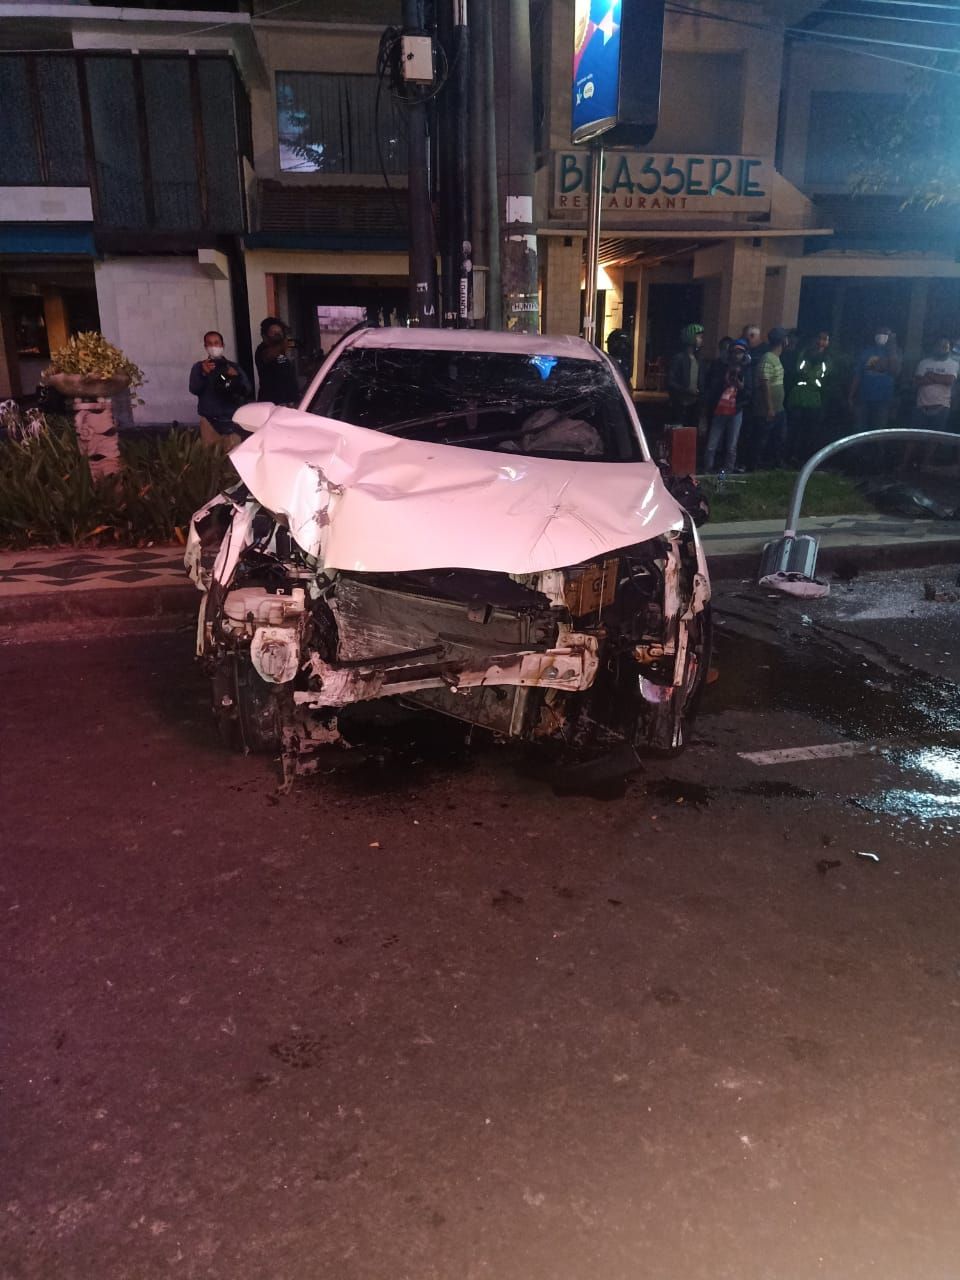 Mobil Honda CRV yang dikendarai seorang perempuan berusia 17 tahun, terbalik di Kuta karena lepas kontrol diduga akibat pengemudi berada dalam pengaruh alkohol, Minggu 25 April 2021.